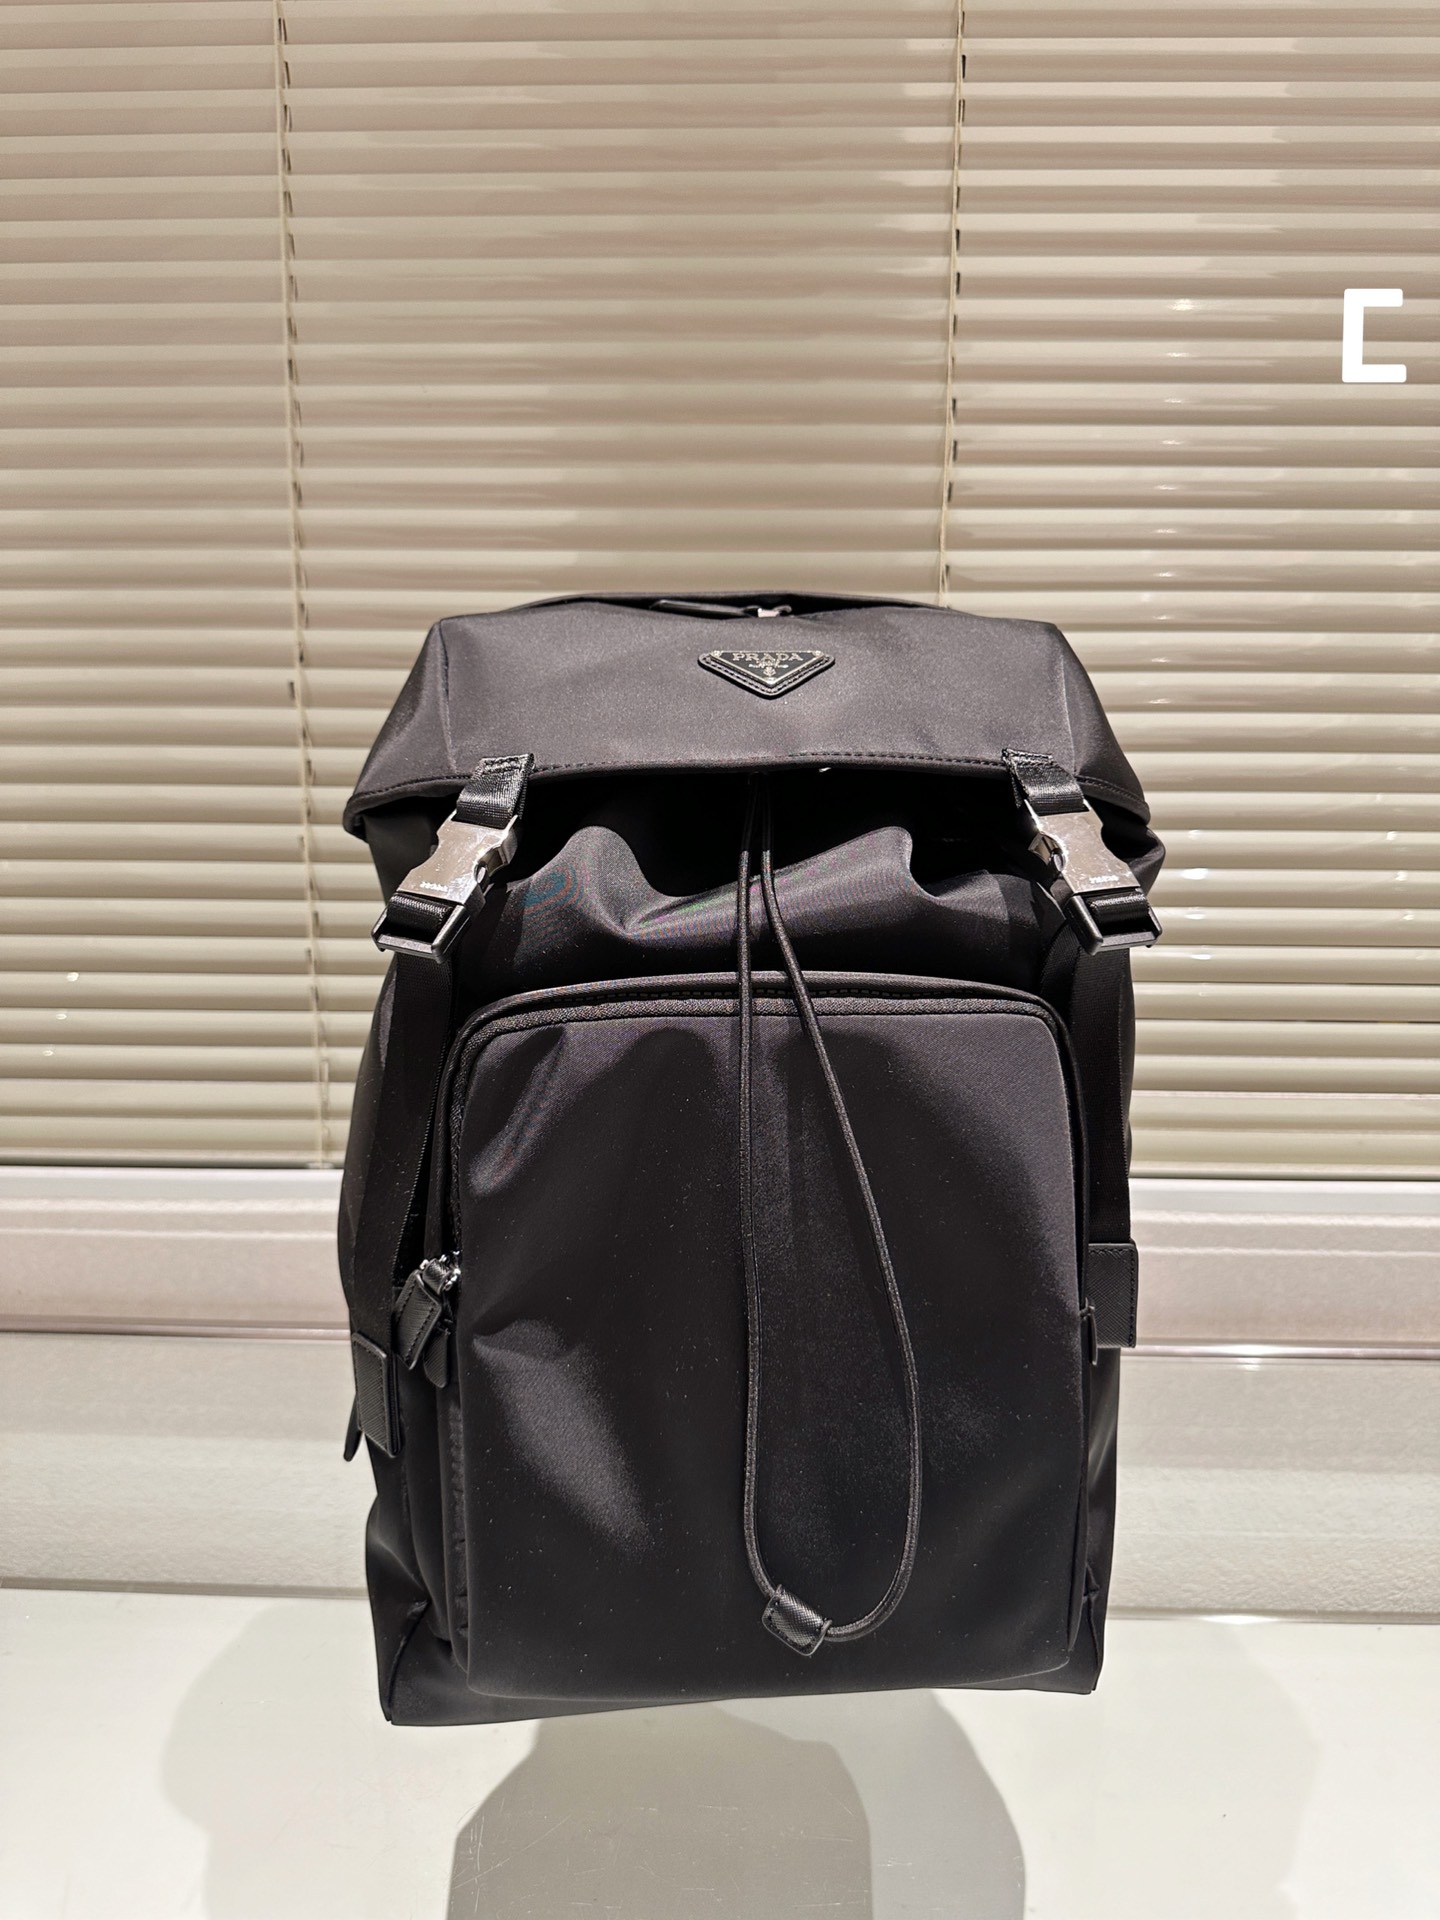 Prada Backpack Handbags Clutches & Pouch Bags Fashion